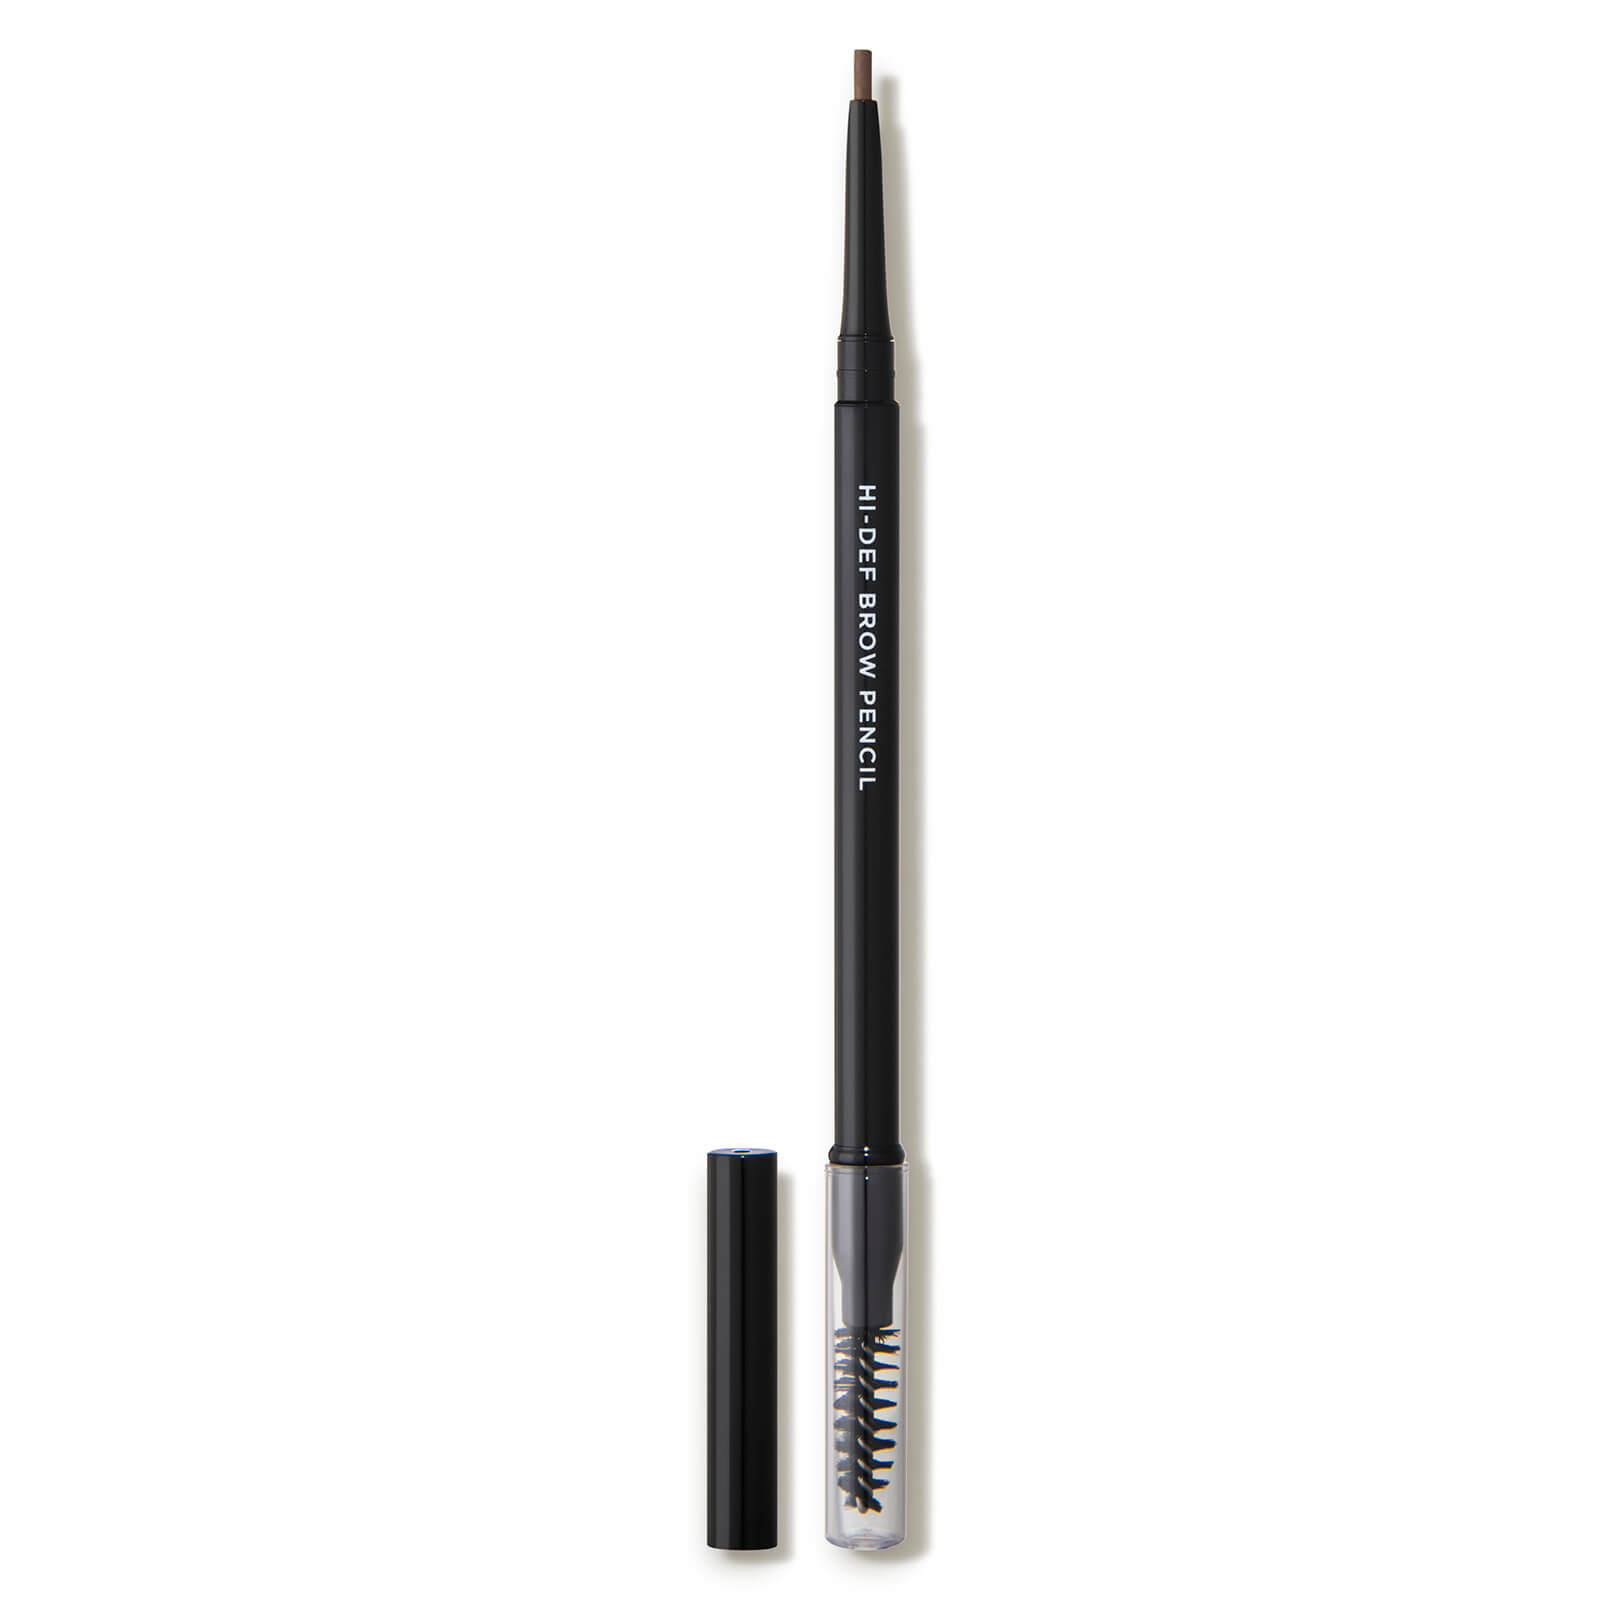 Revitalash Cosmetics Hi-def Brow Pencil 0.005 Oz. - Warm Brown